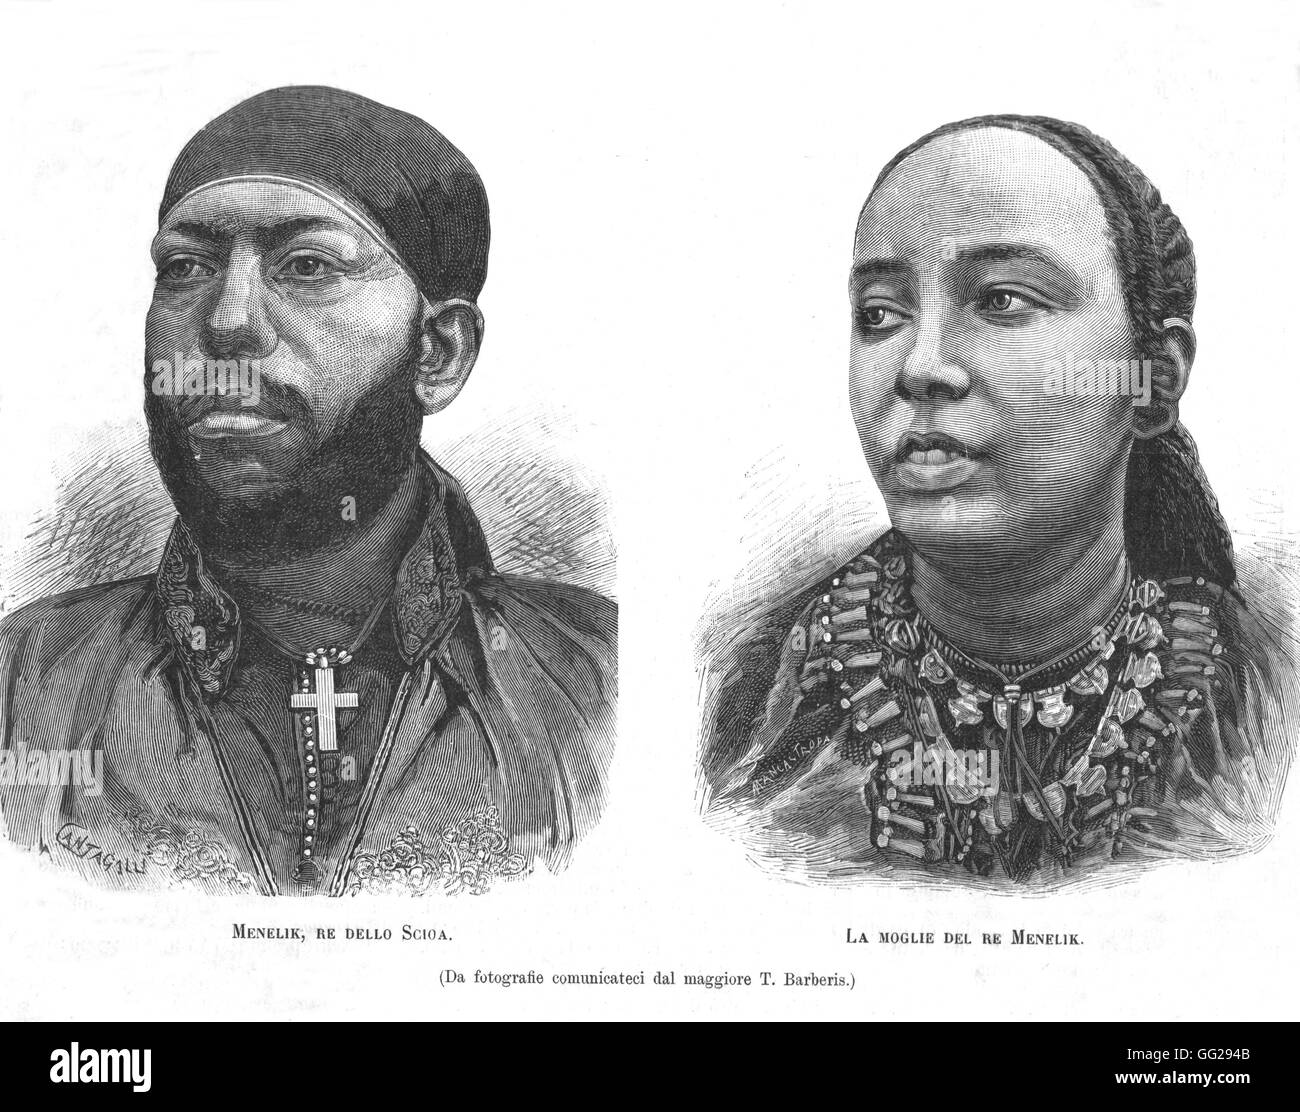 Menelik II, imperatore di Etiopia, e sua moglie in "L'Illustrazione italiana' 2 febbraio 1887 Etiopia (Abissinia) Foto Stock